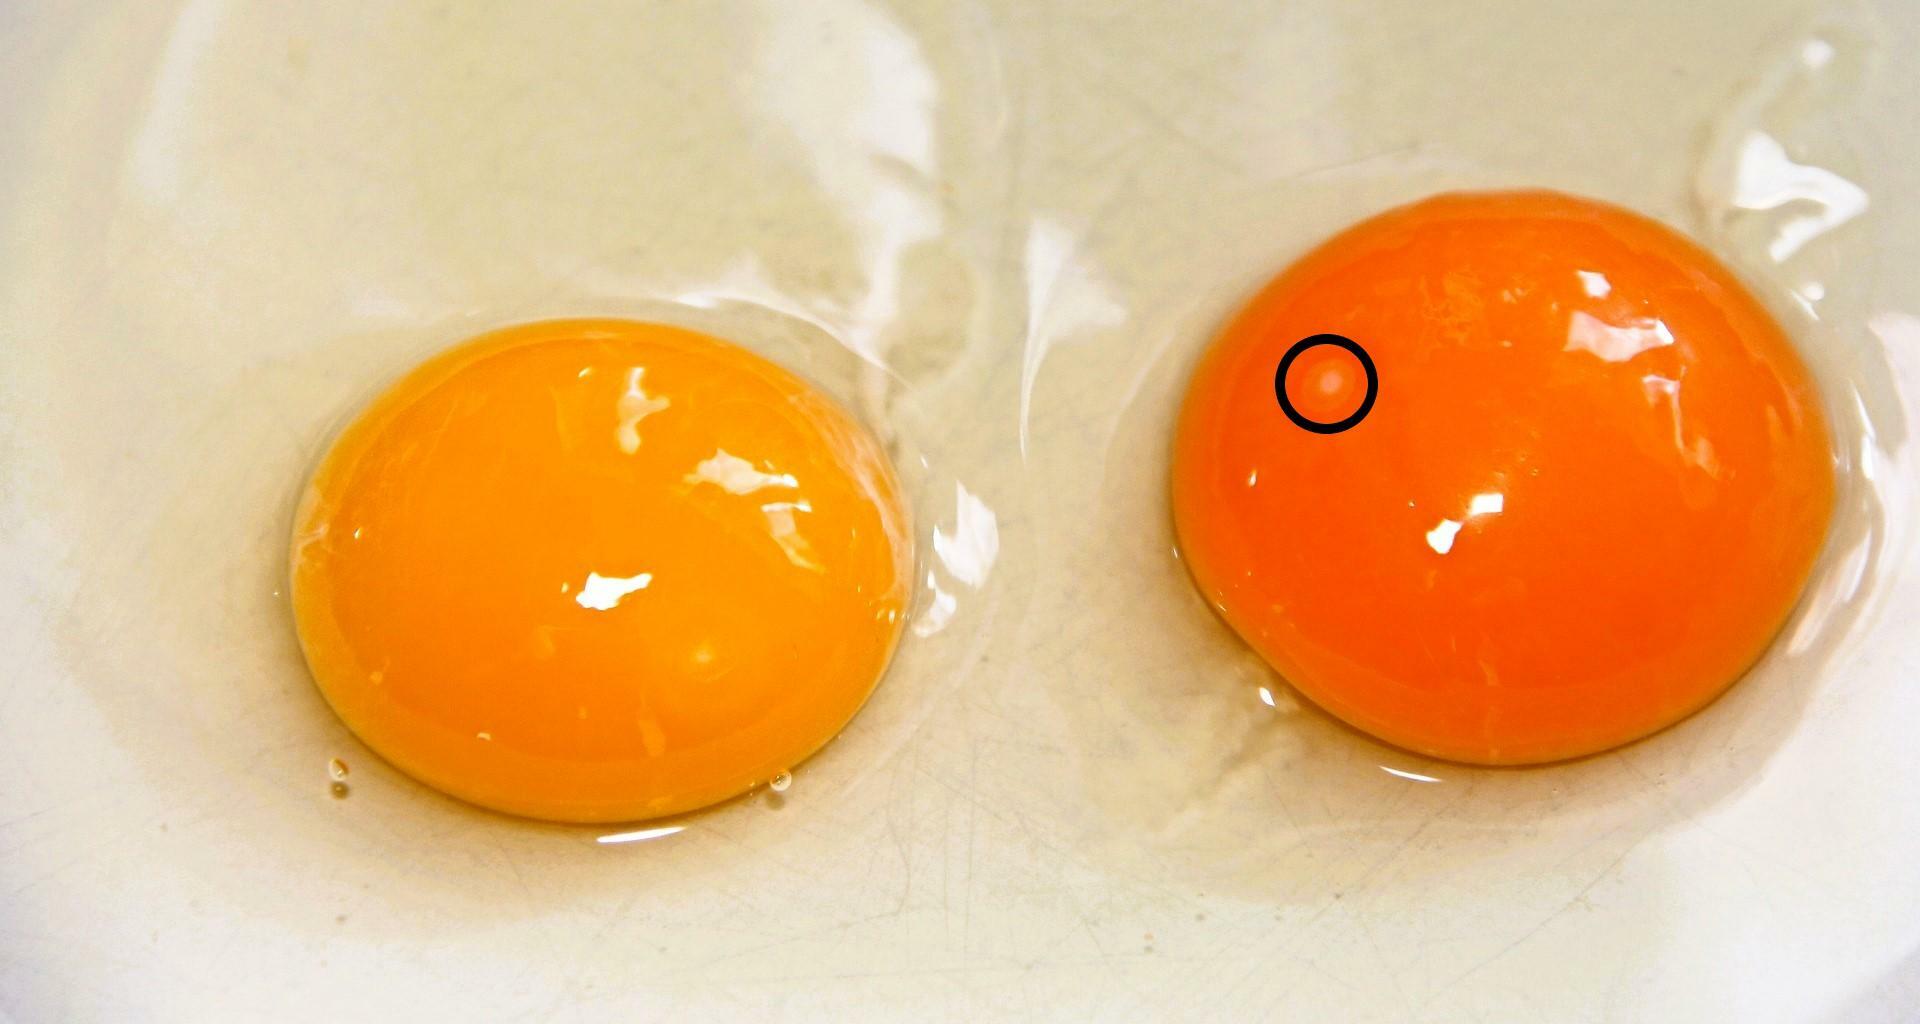 取り出した卵も黄身が破れなければ培養可能。丸印の胚の部分を入れ替えることで、恐竜を生み出せるかもしれない。あるいは、胚に恐竜の生殖細胞を注入しておく方法も考えられる